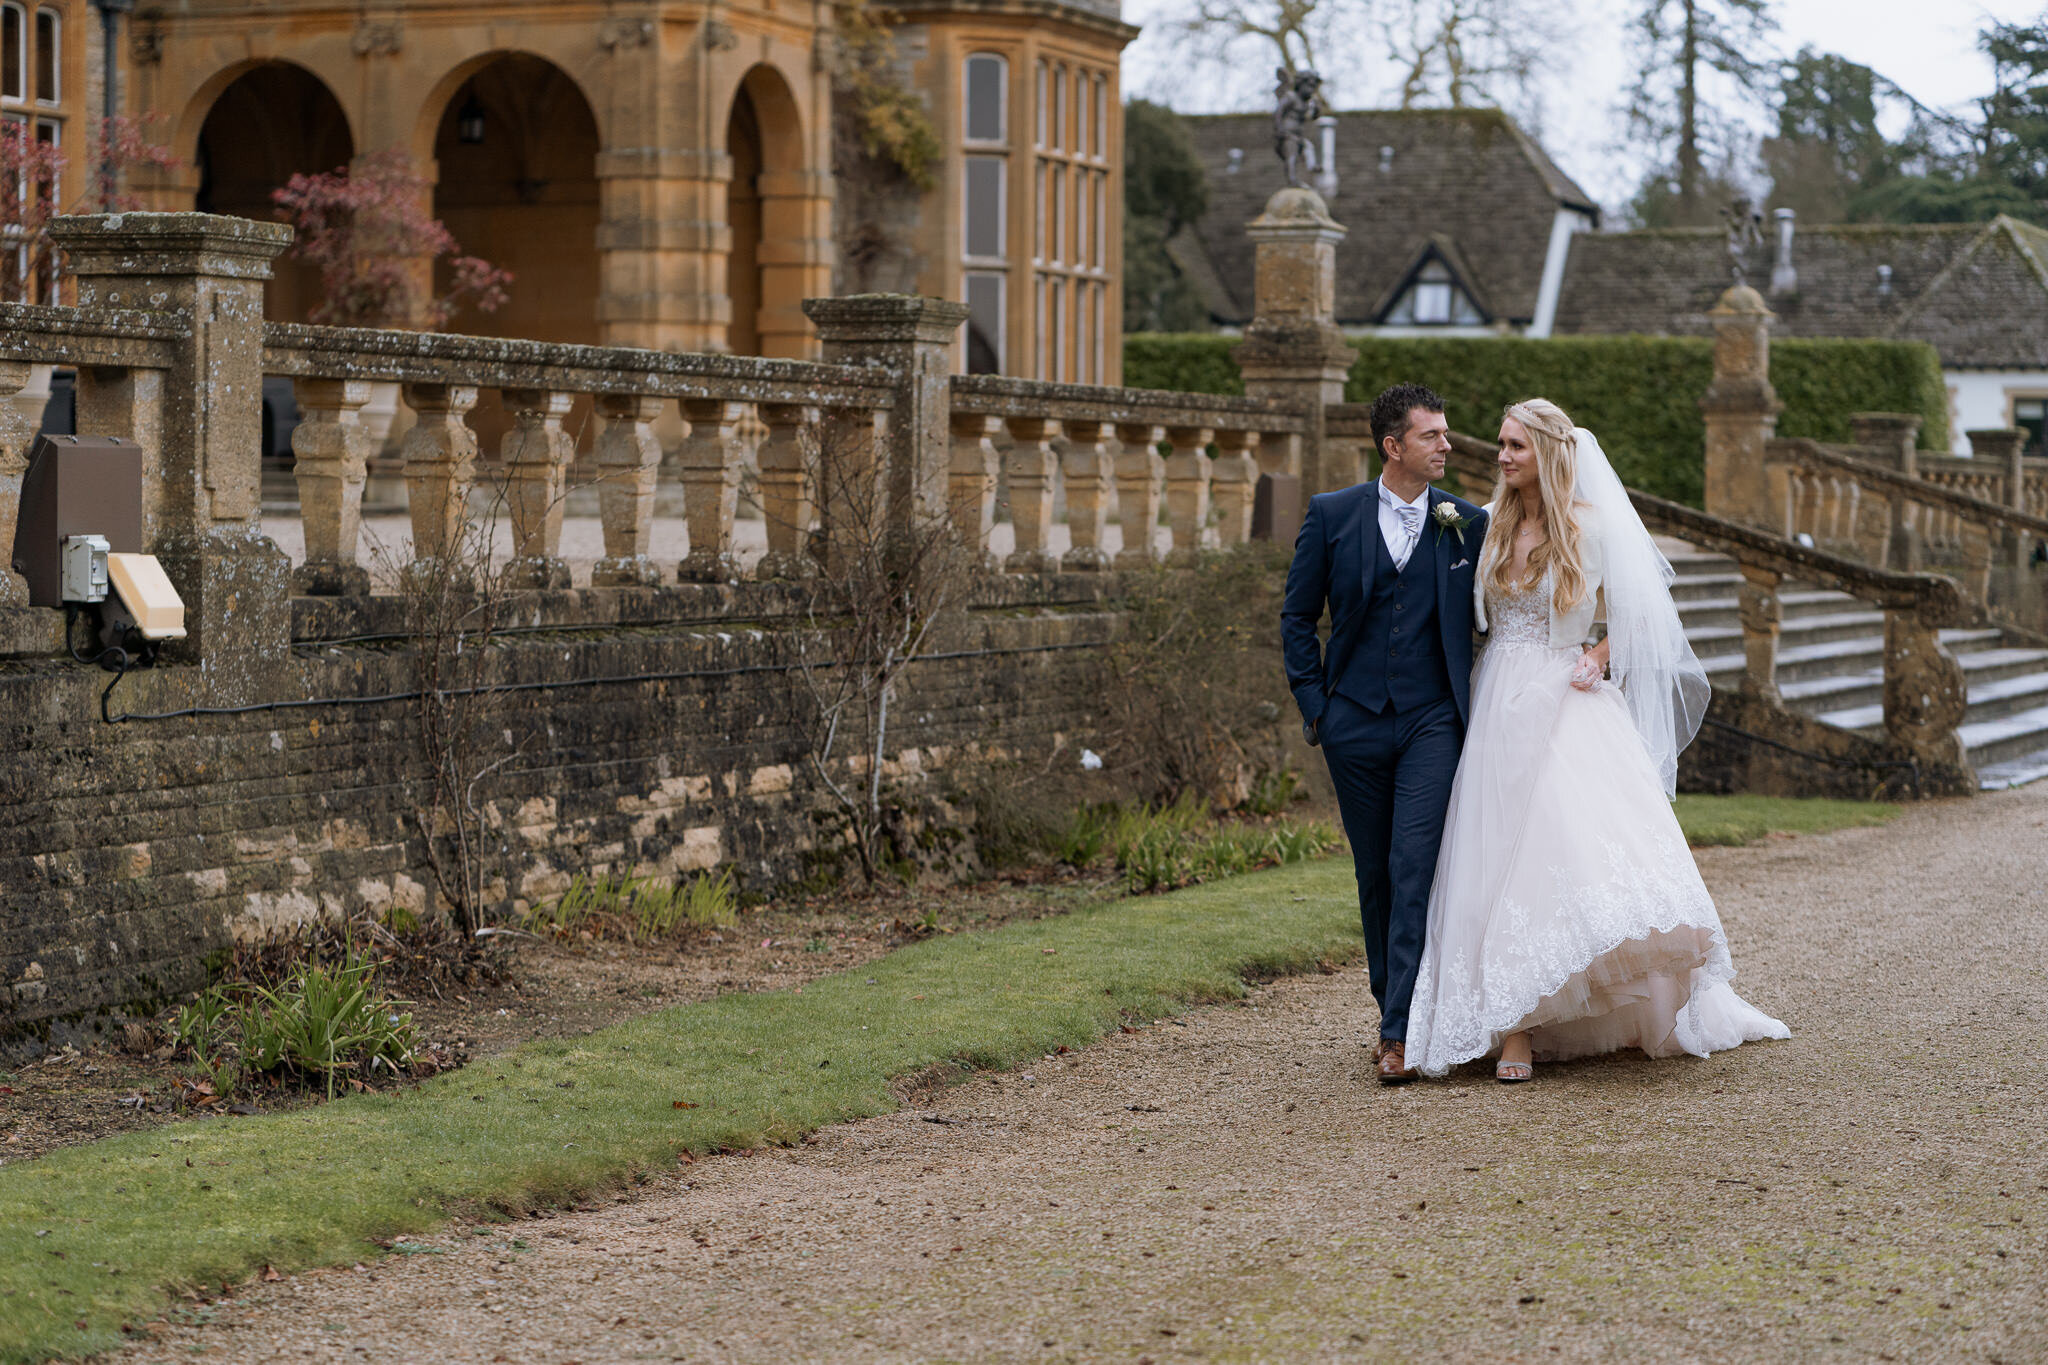 Wedding Photography Waddesdon Manor Buckinghamshire